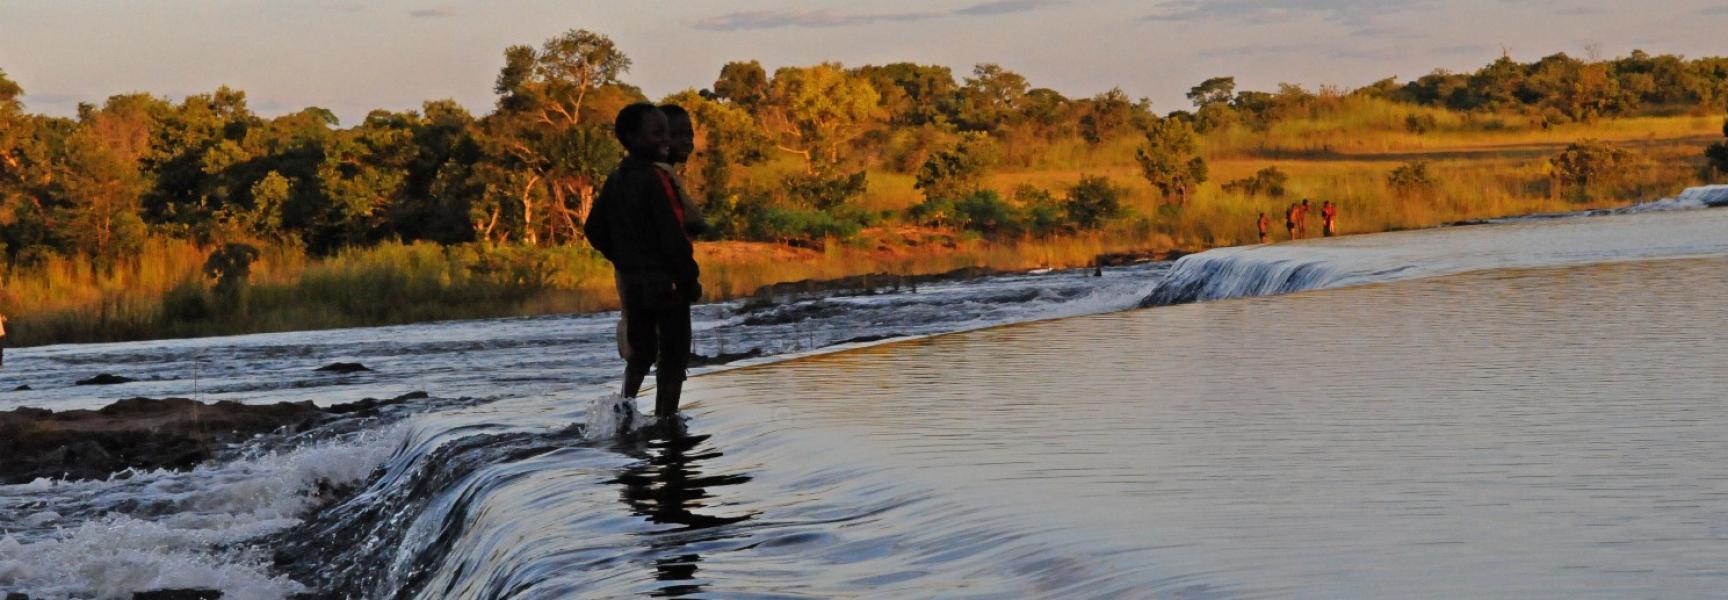 Un enfant se tient debout dans une rivière au crépuscule